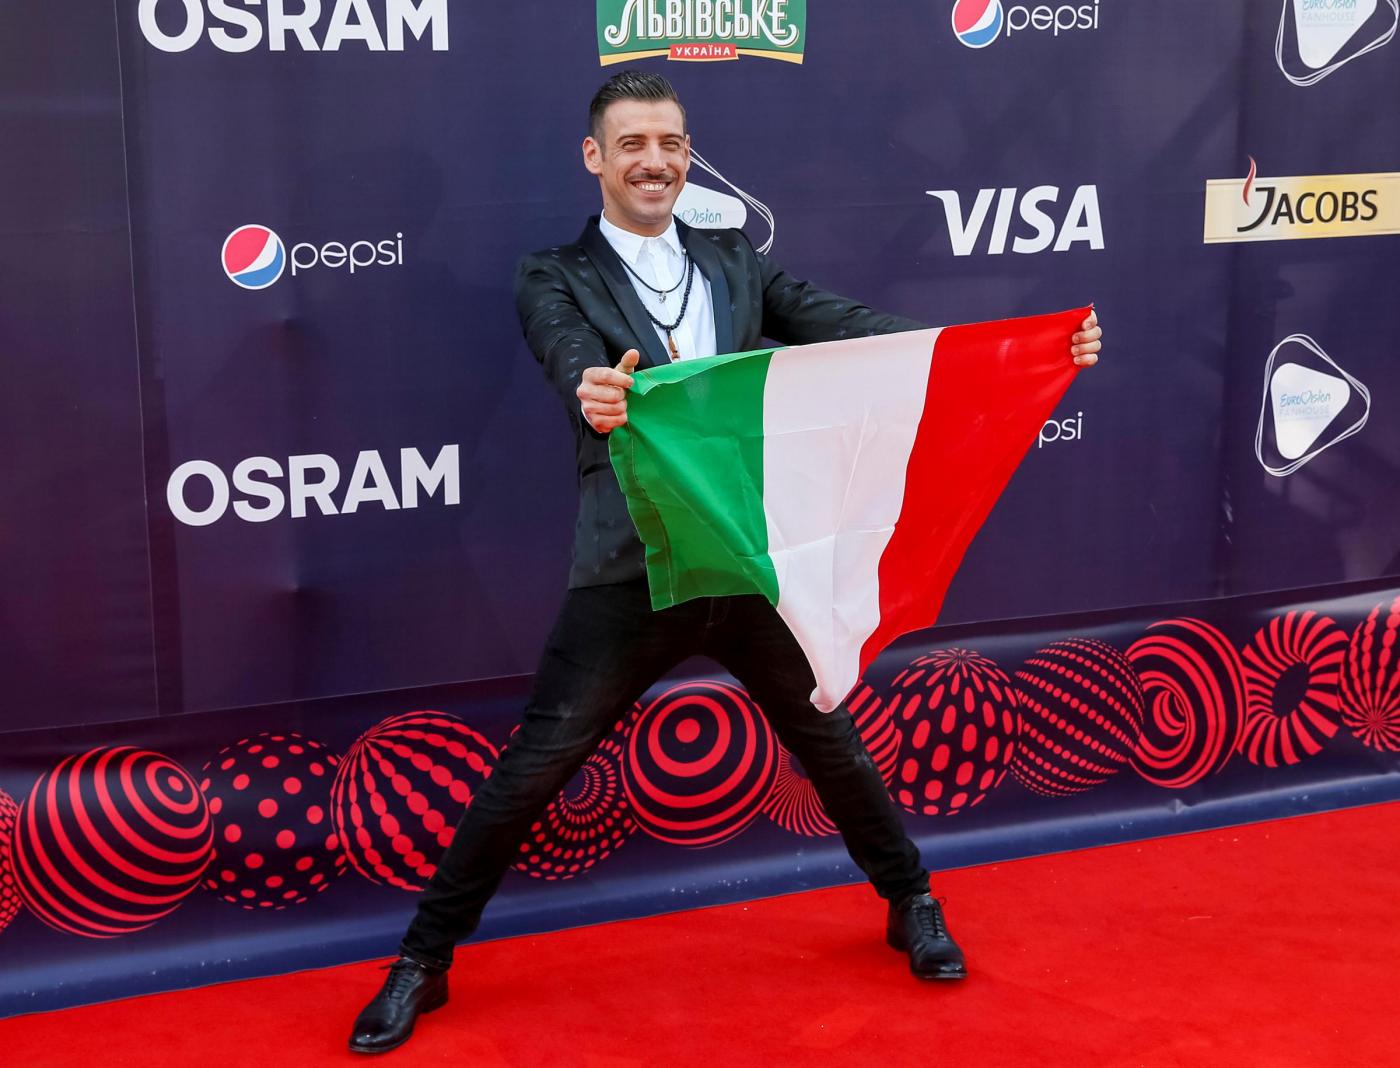 Francesco Gabbani Eurovision Song Contest 2017